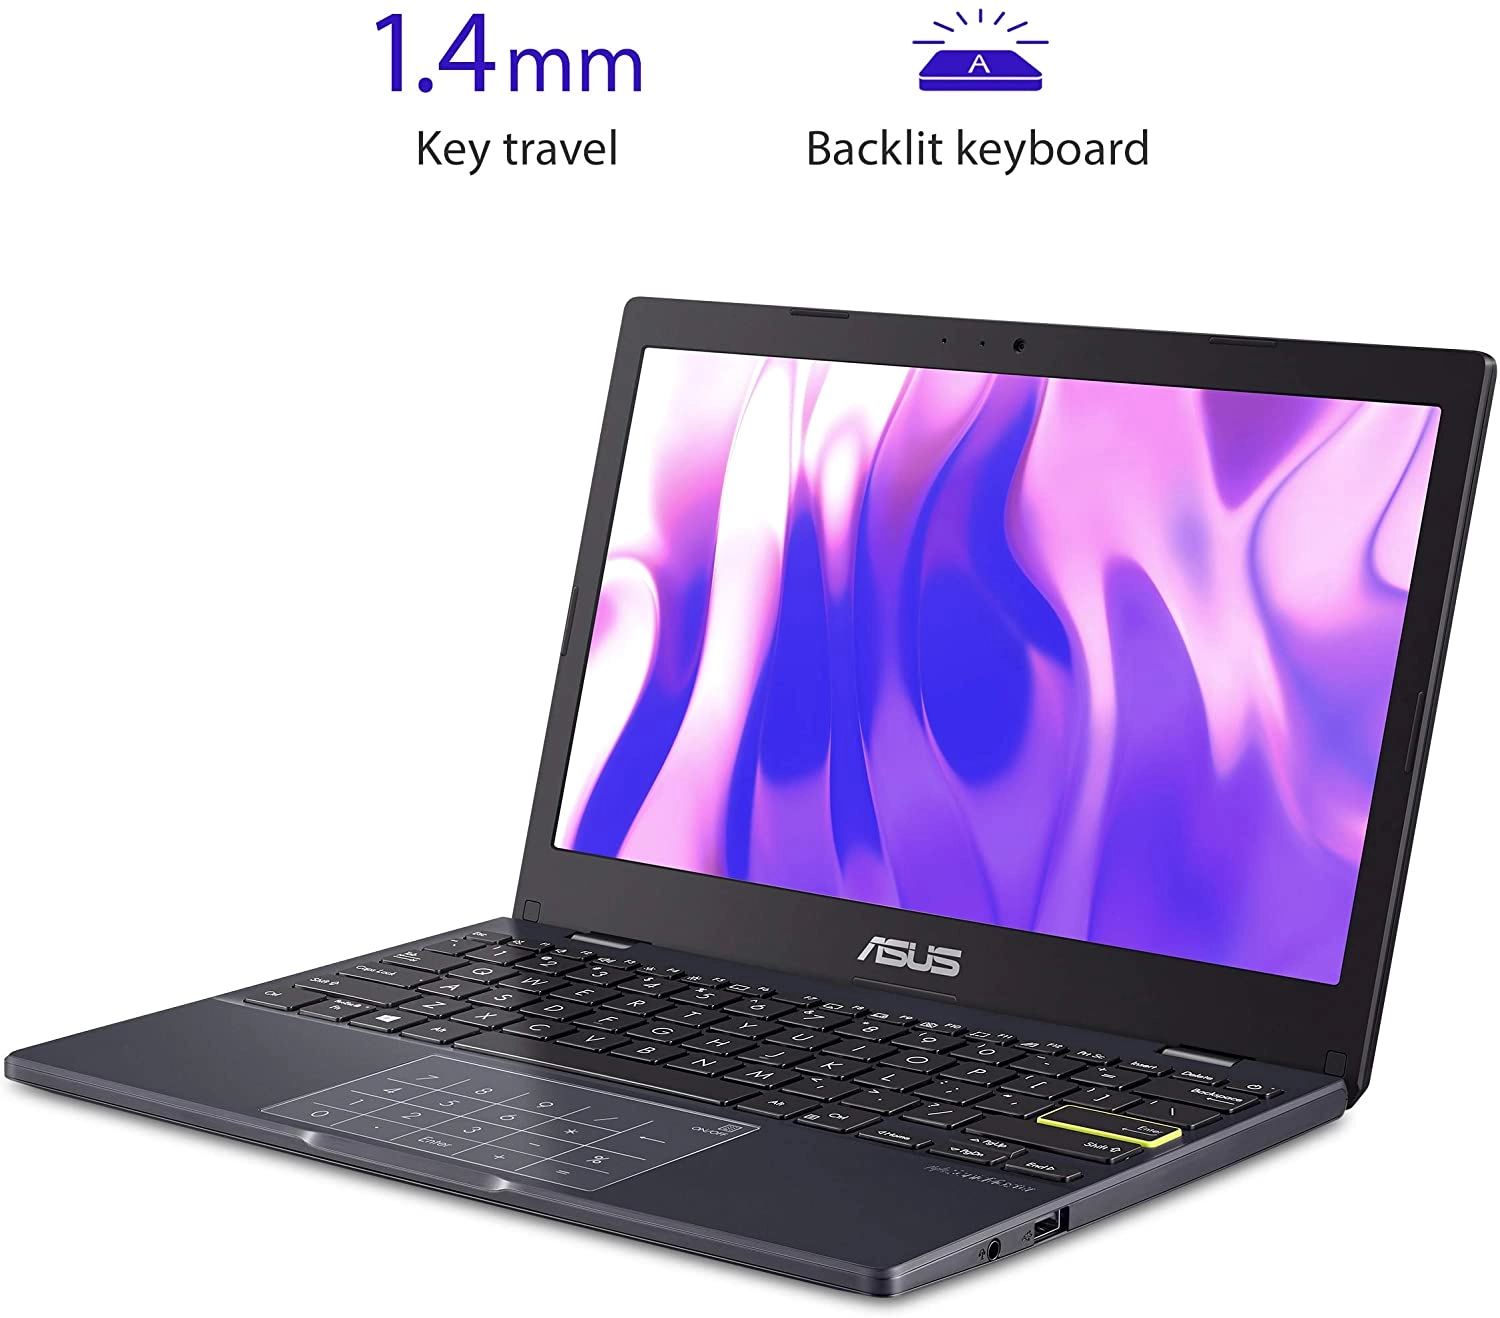 ASUS Laptop L210MA laptop image